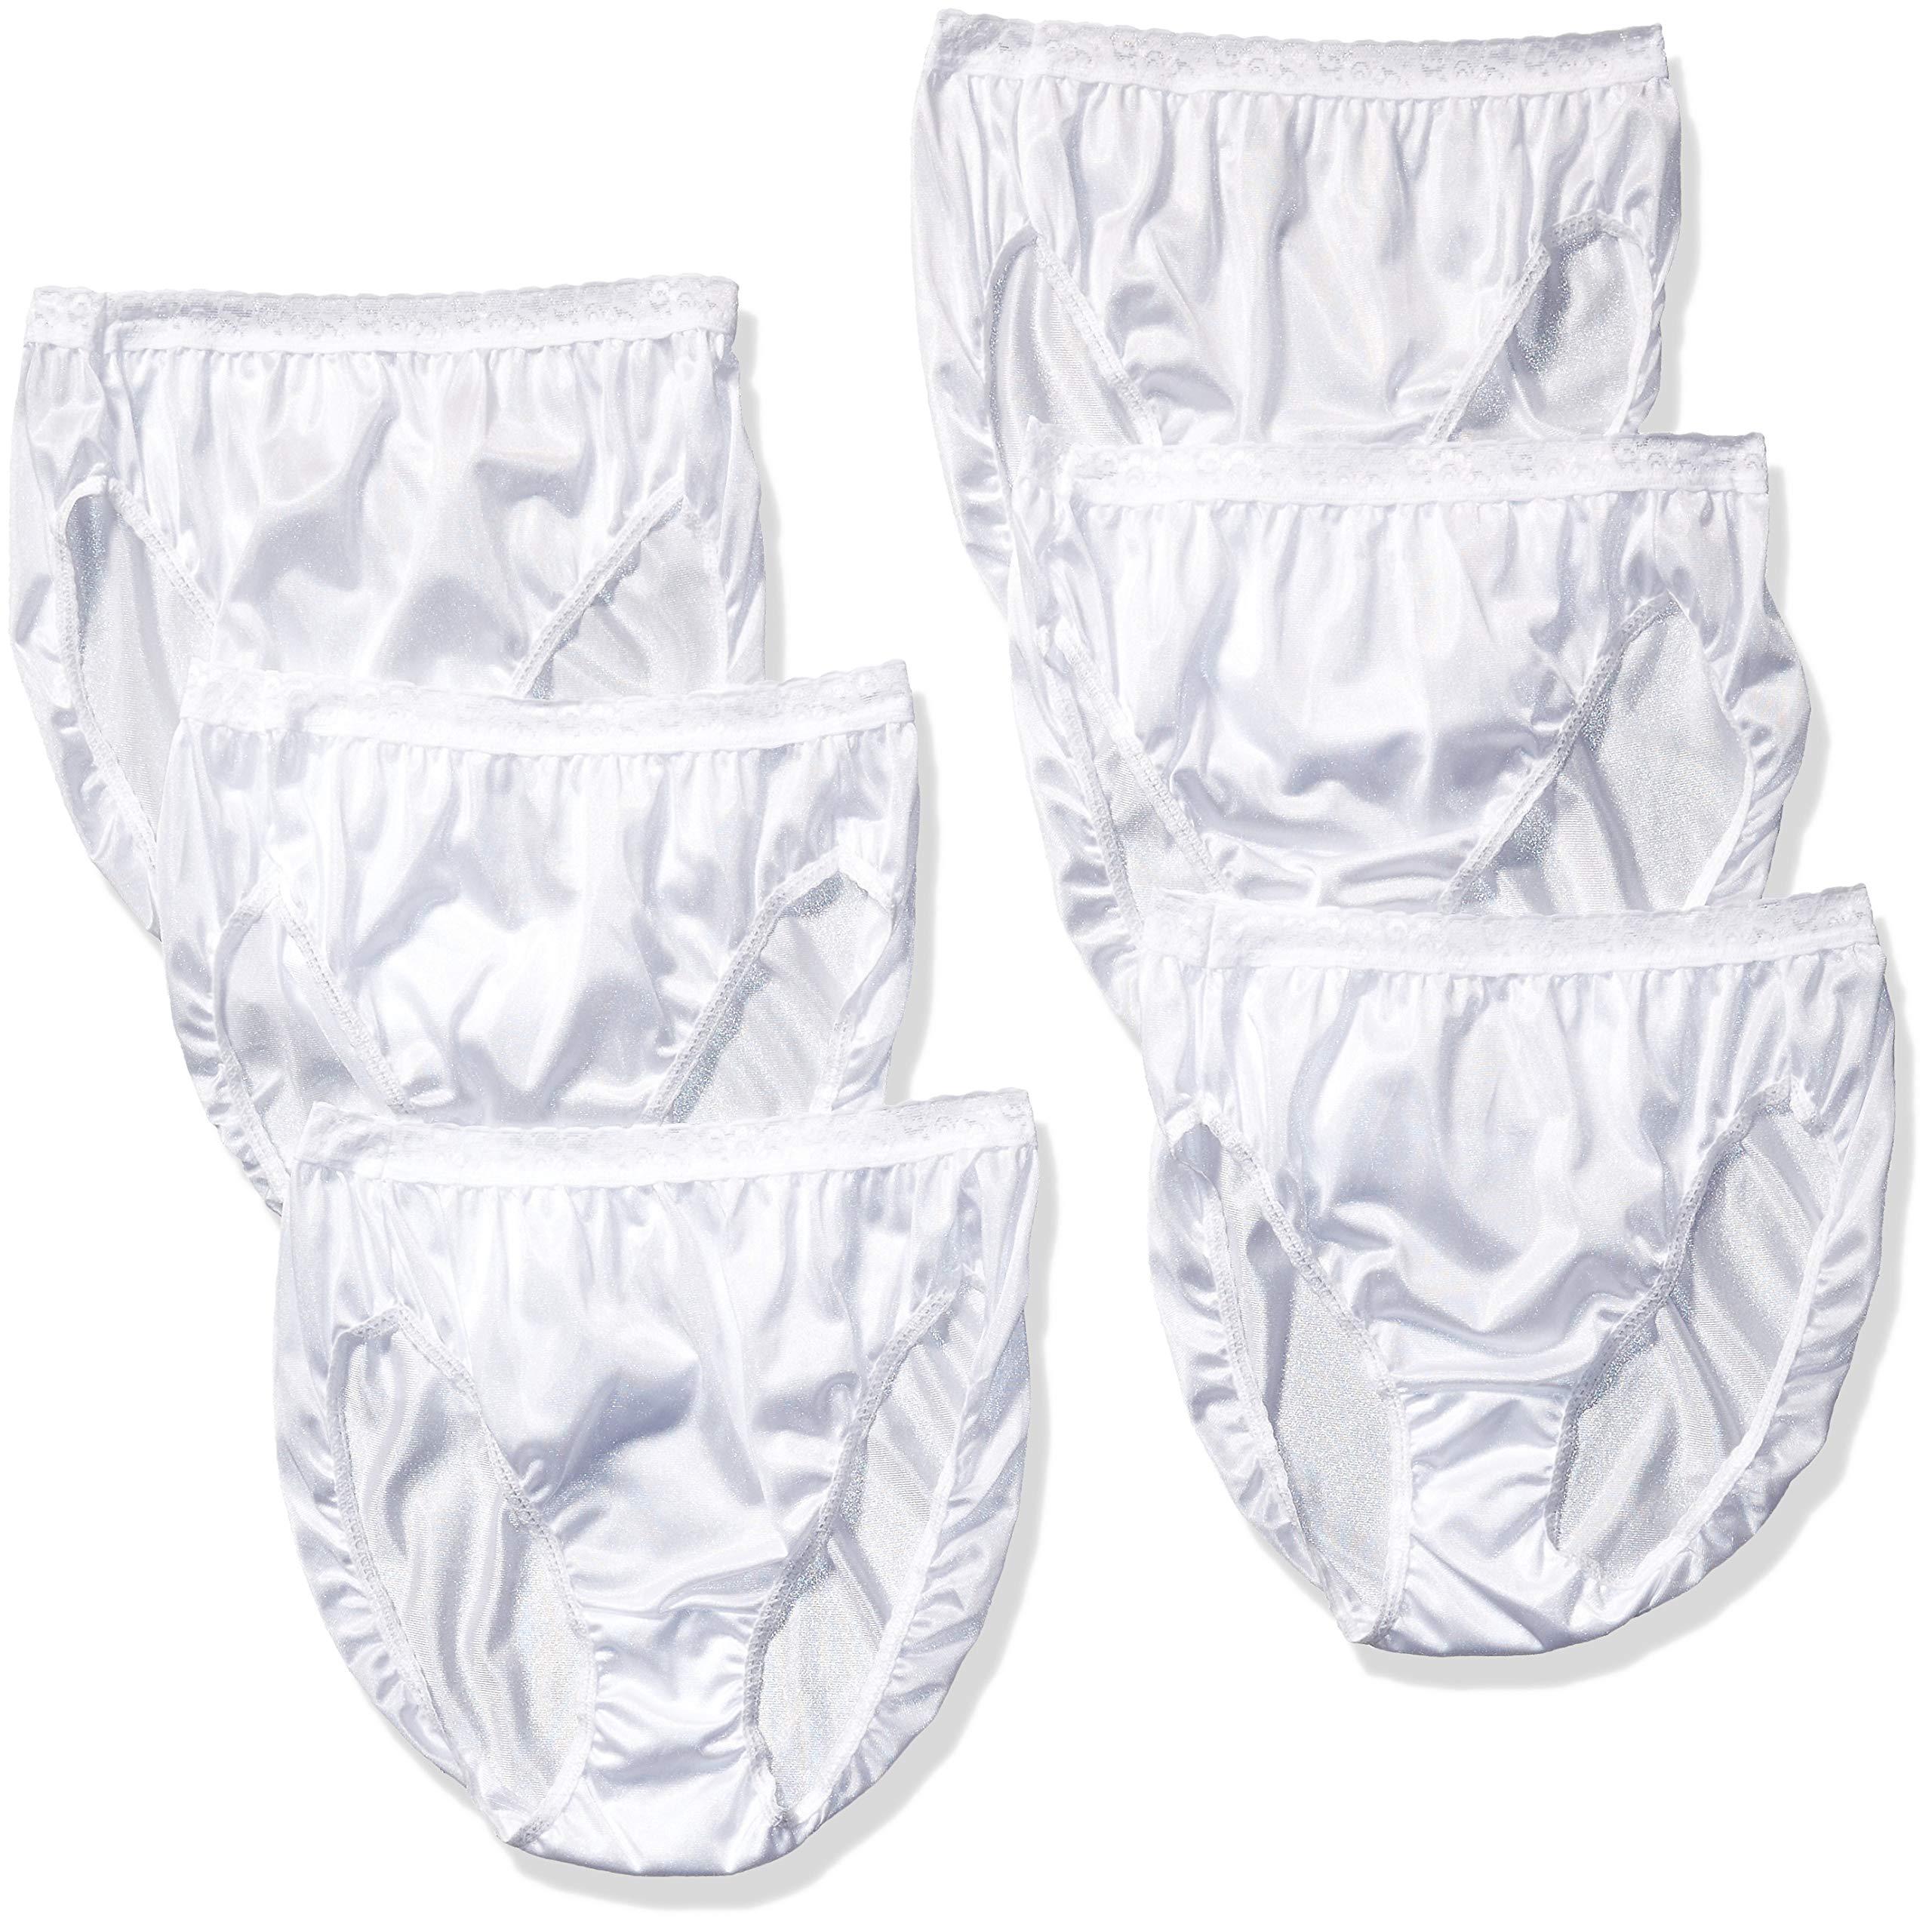 Buy Hanes Women's Nylon Hi-Cut Panties 6-Pack Online at desertcartINDIA